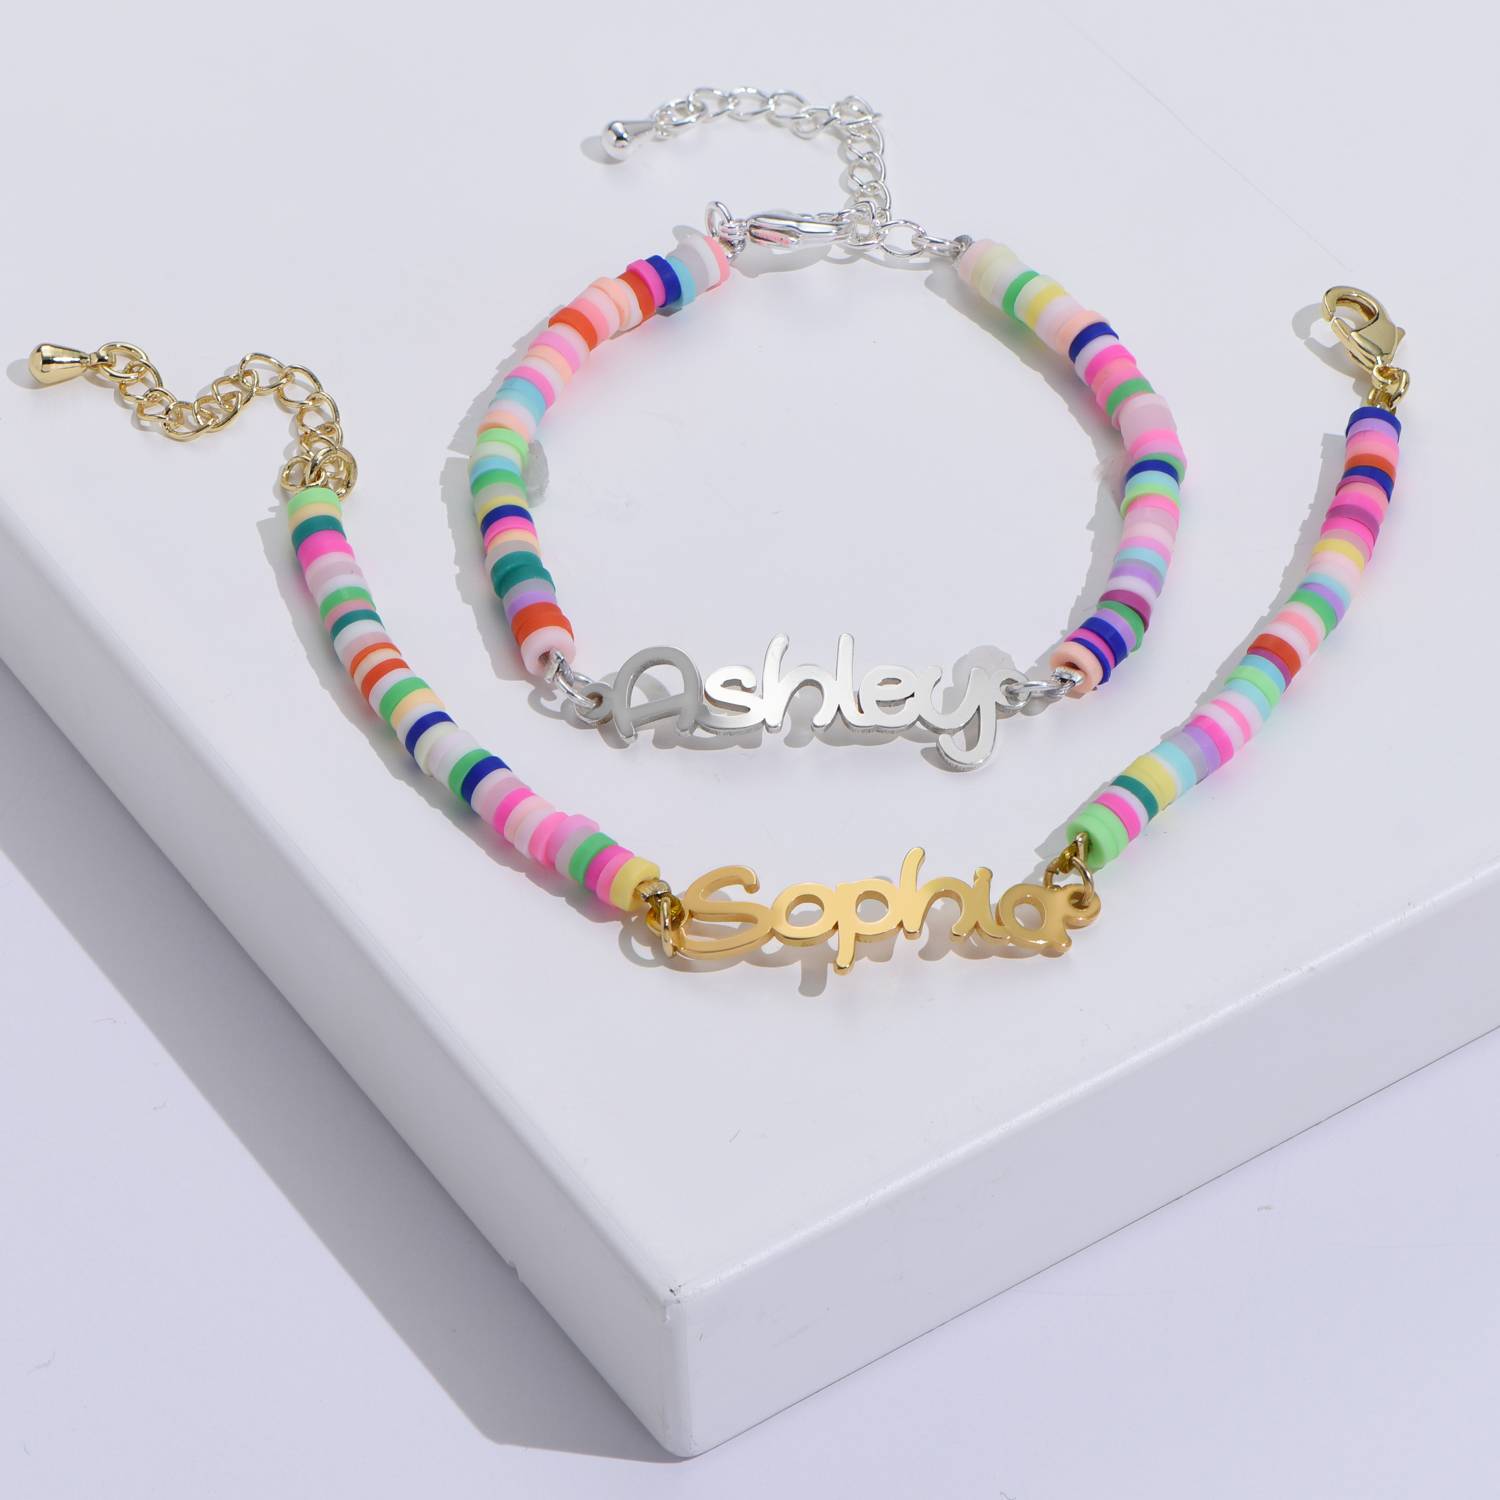 Regenboog armband Sterling zilver voor meisjes-5 Productfoto